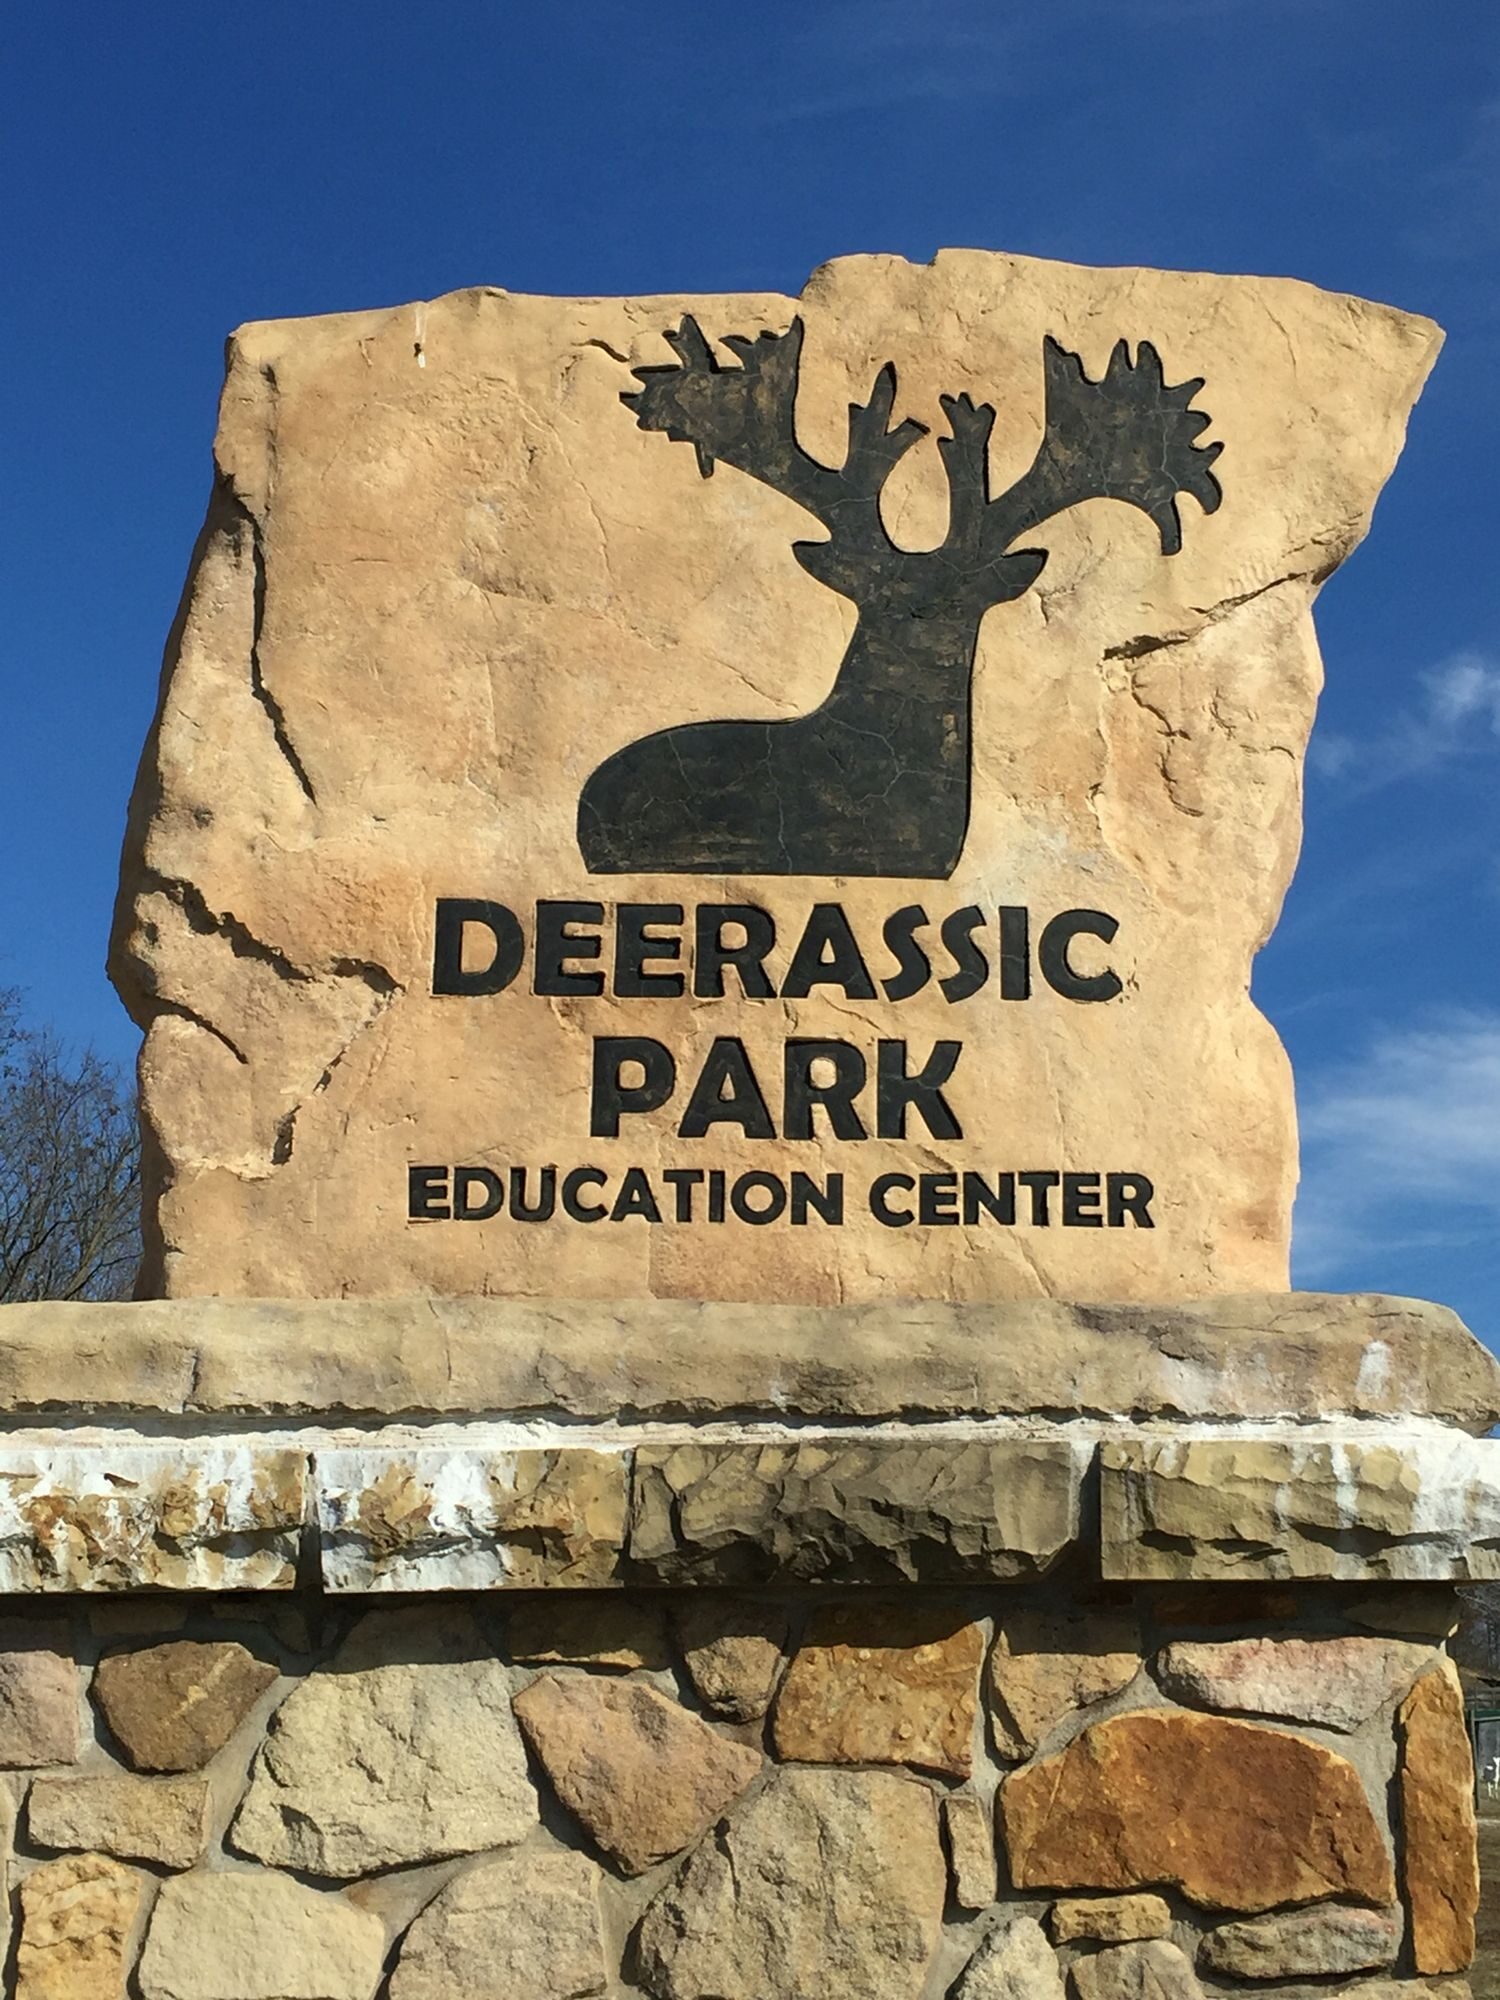 Deerassic Park entrance sign